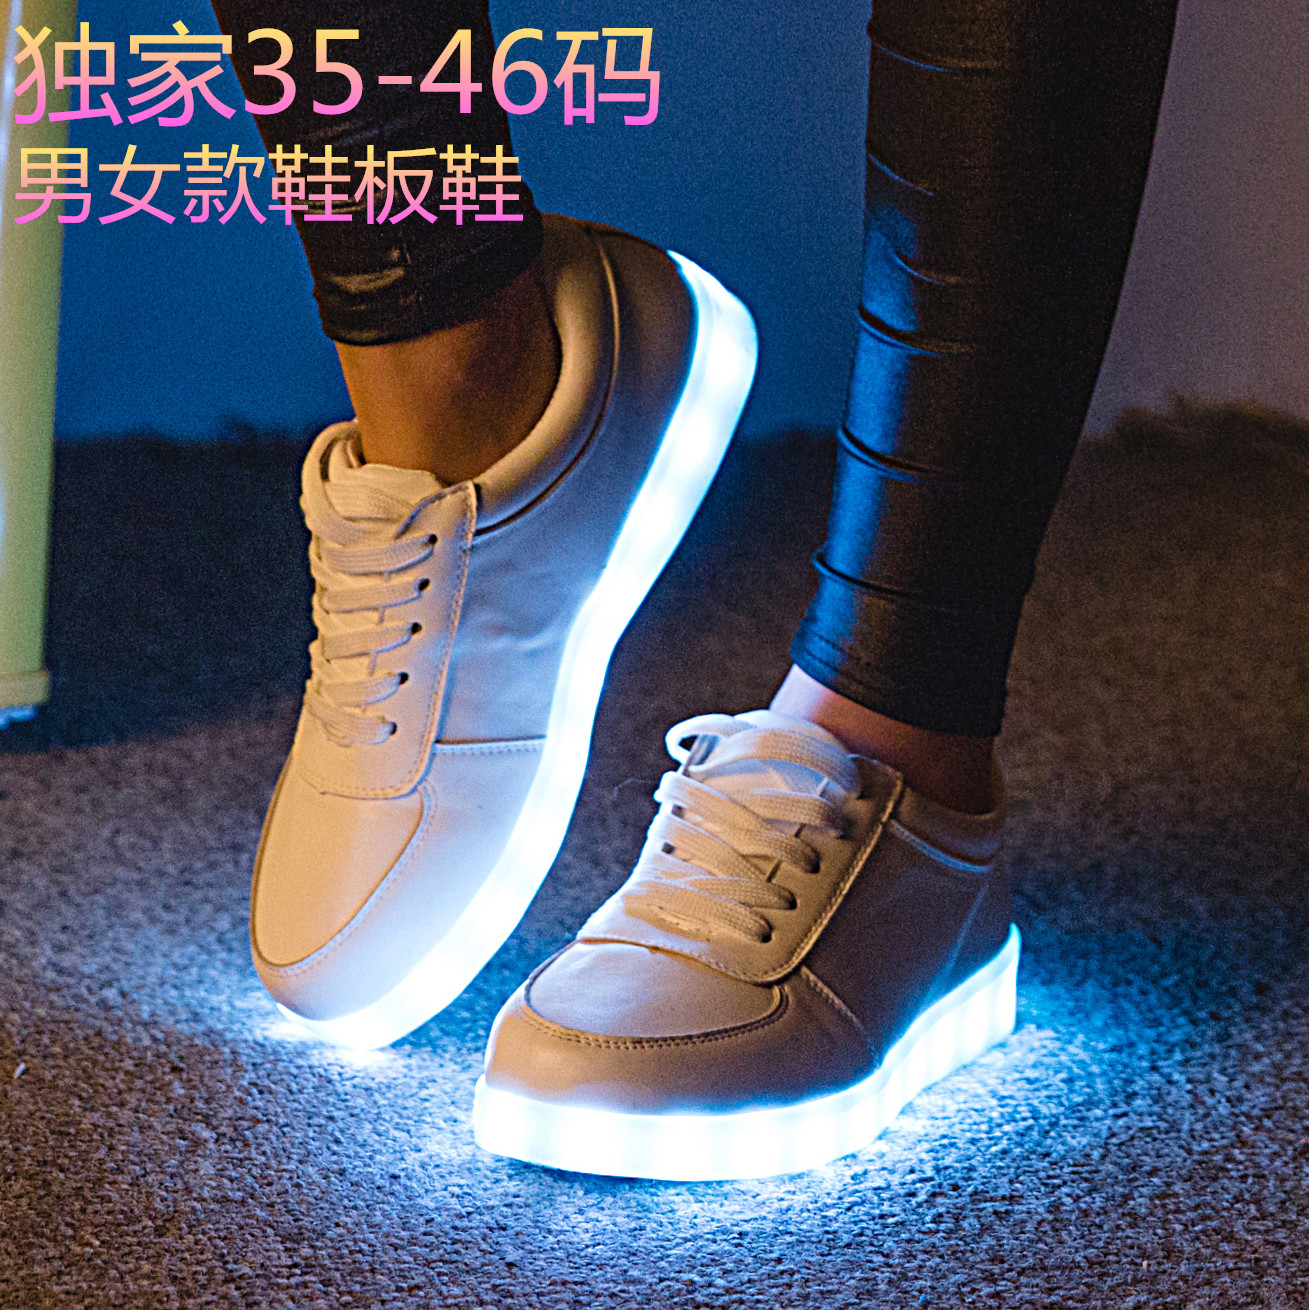 七彩发光鞋夜光鞋荧光鞋情侣款LED灯光鞋韩版男女板鞋USB充电批发-阿里巴巴